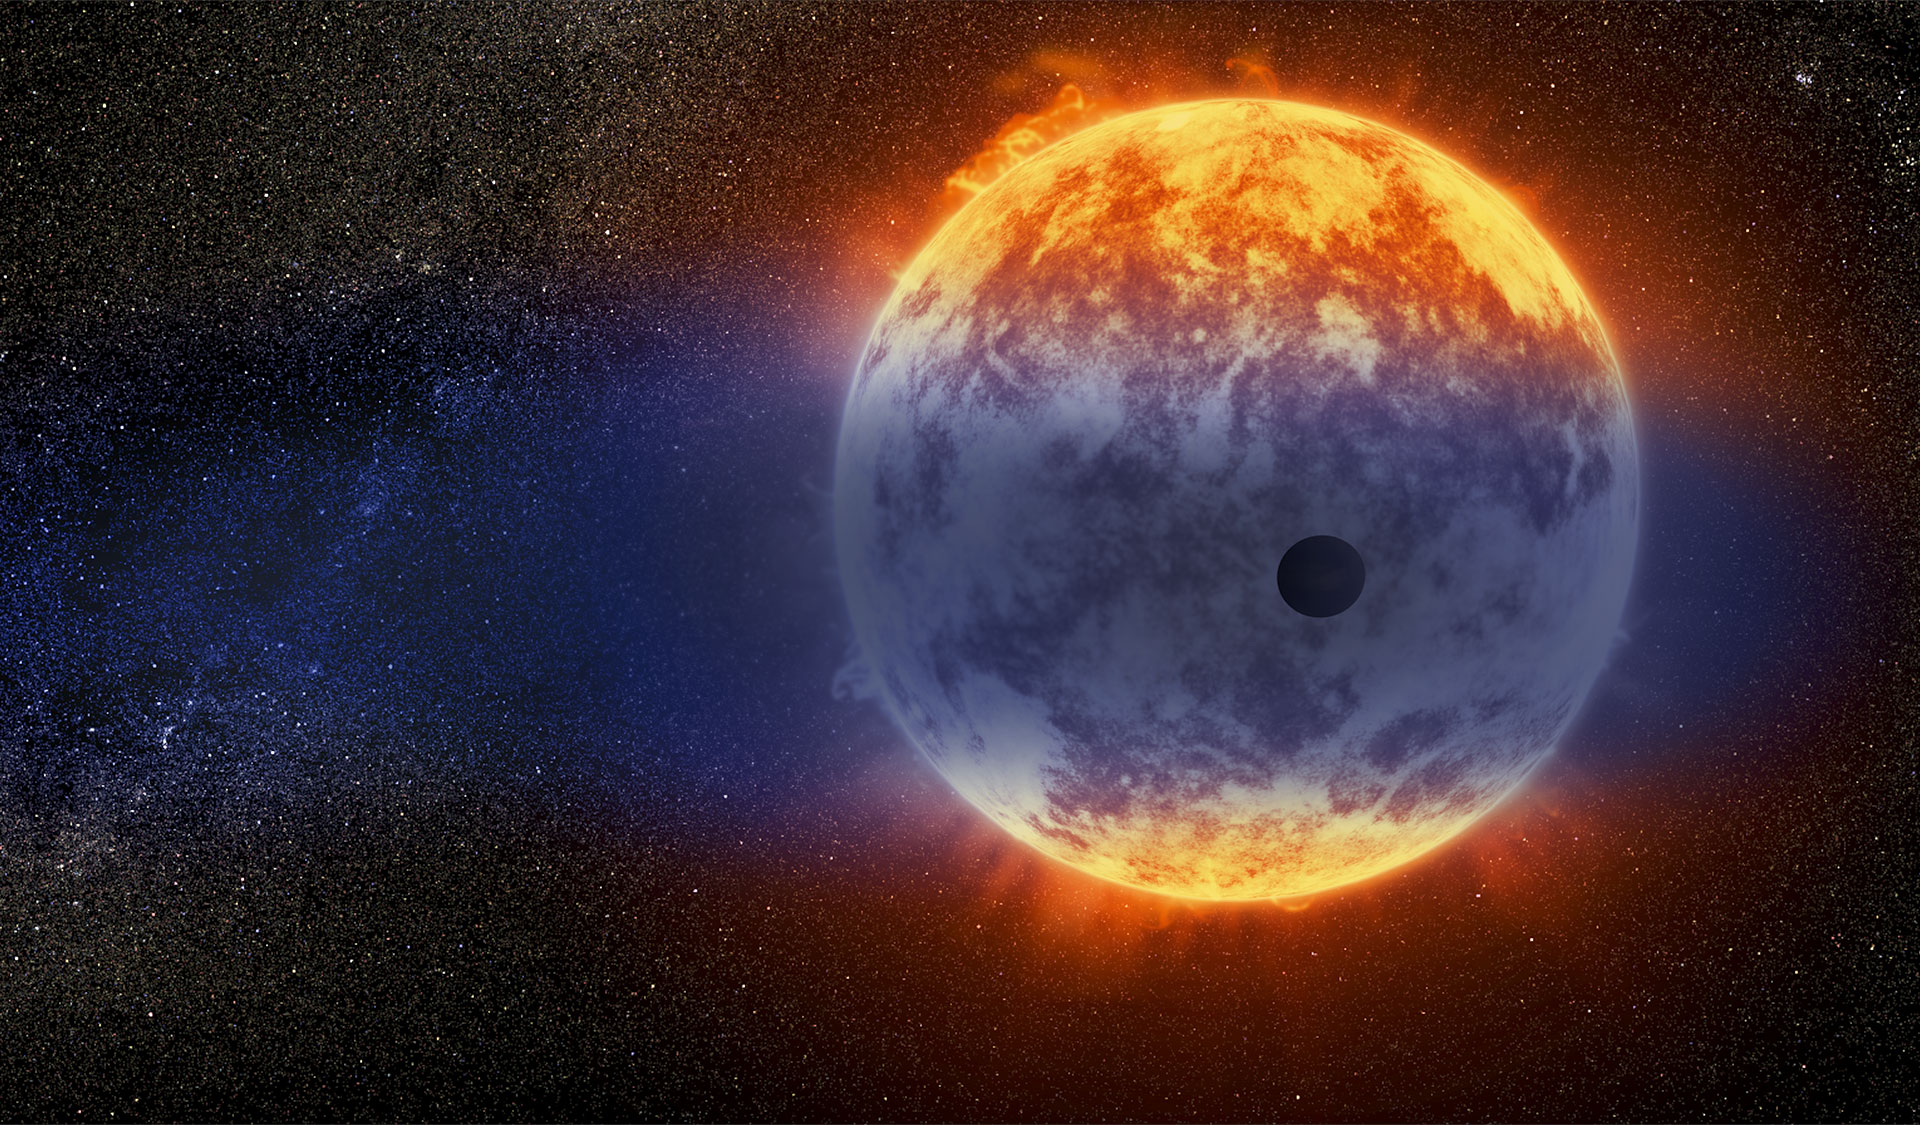 Cette vue d'artiste montre un nuage géant d’hydrogène jaillissant d’une planète chaude de la taille de Neptune, à seulement 97 années-lumière de la Terre. L’exoplanète est minuscule par rapport à son étoile, une naine rouge nommée GJ 3470. Le rayonnement intense de l’étoile réchauffe l’hydrogène présent dans la haute atmosphère de la planète jusqu’à ce qu’il s’échappe dans l’espace. © Nasa, Esa and D. Player (STScI)